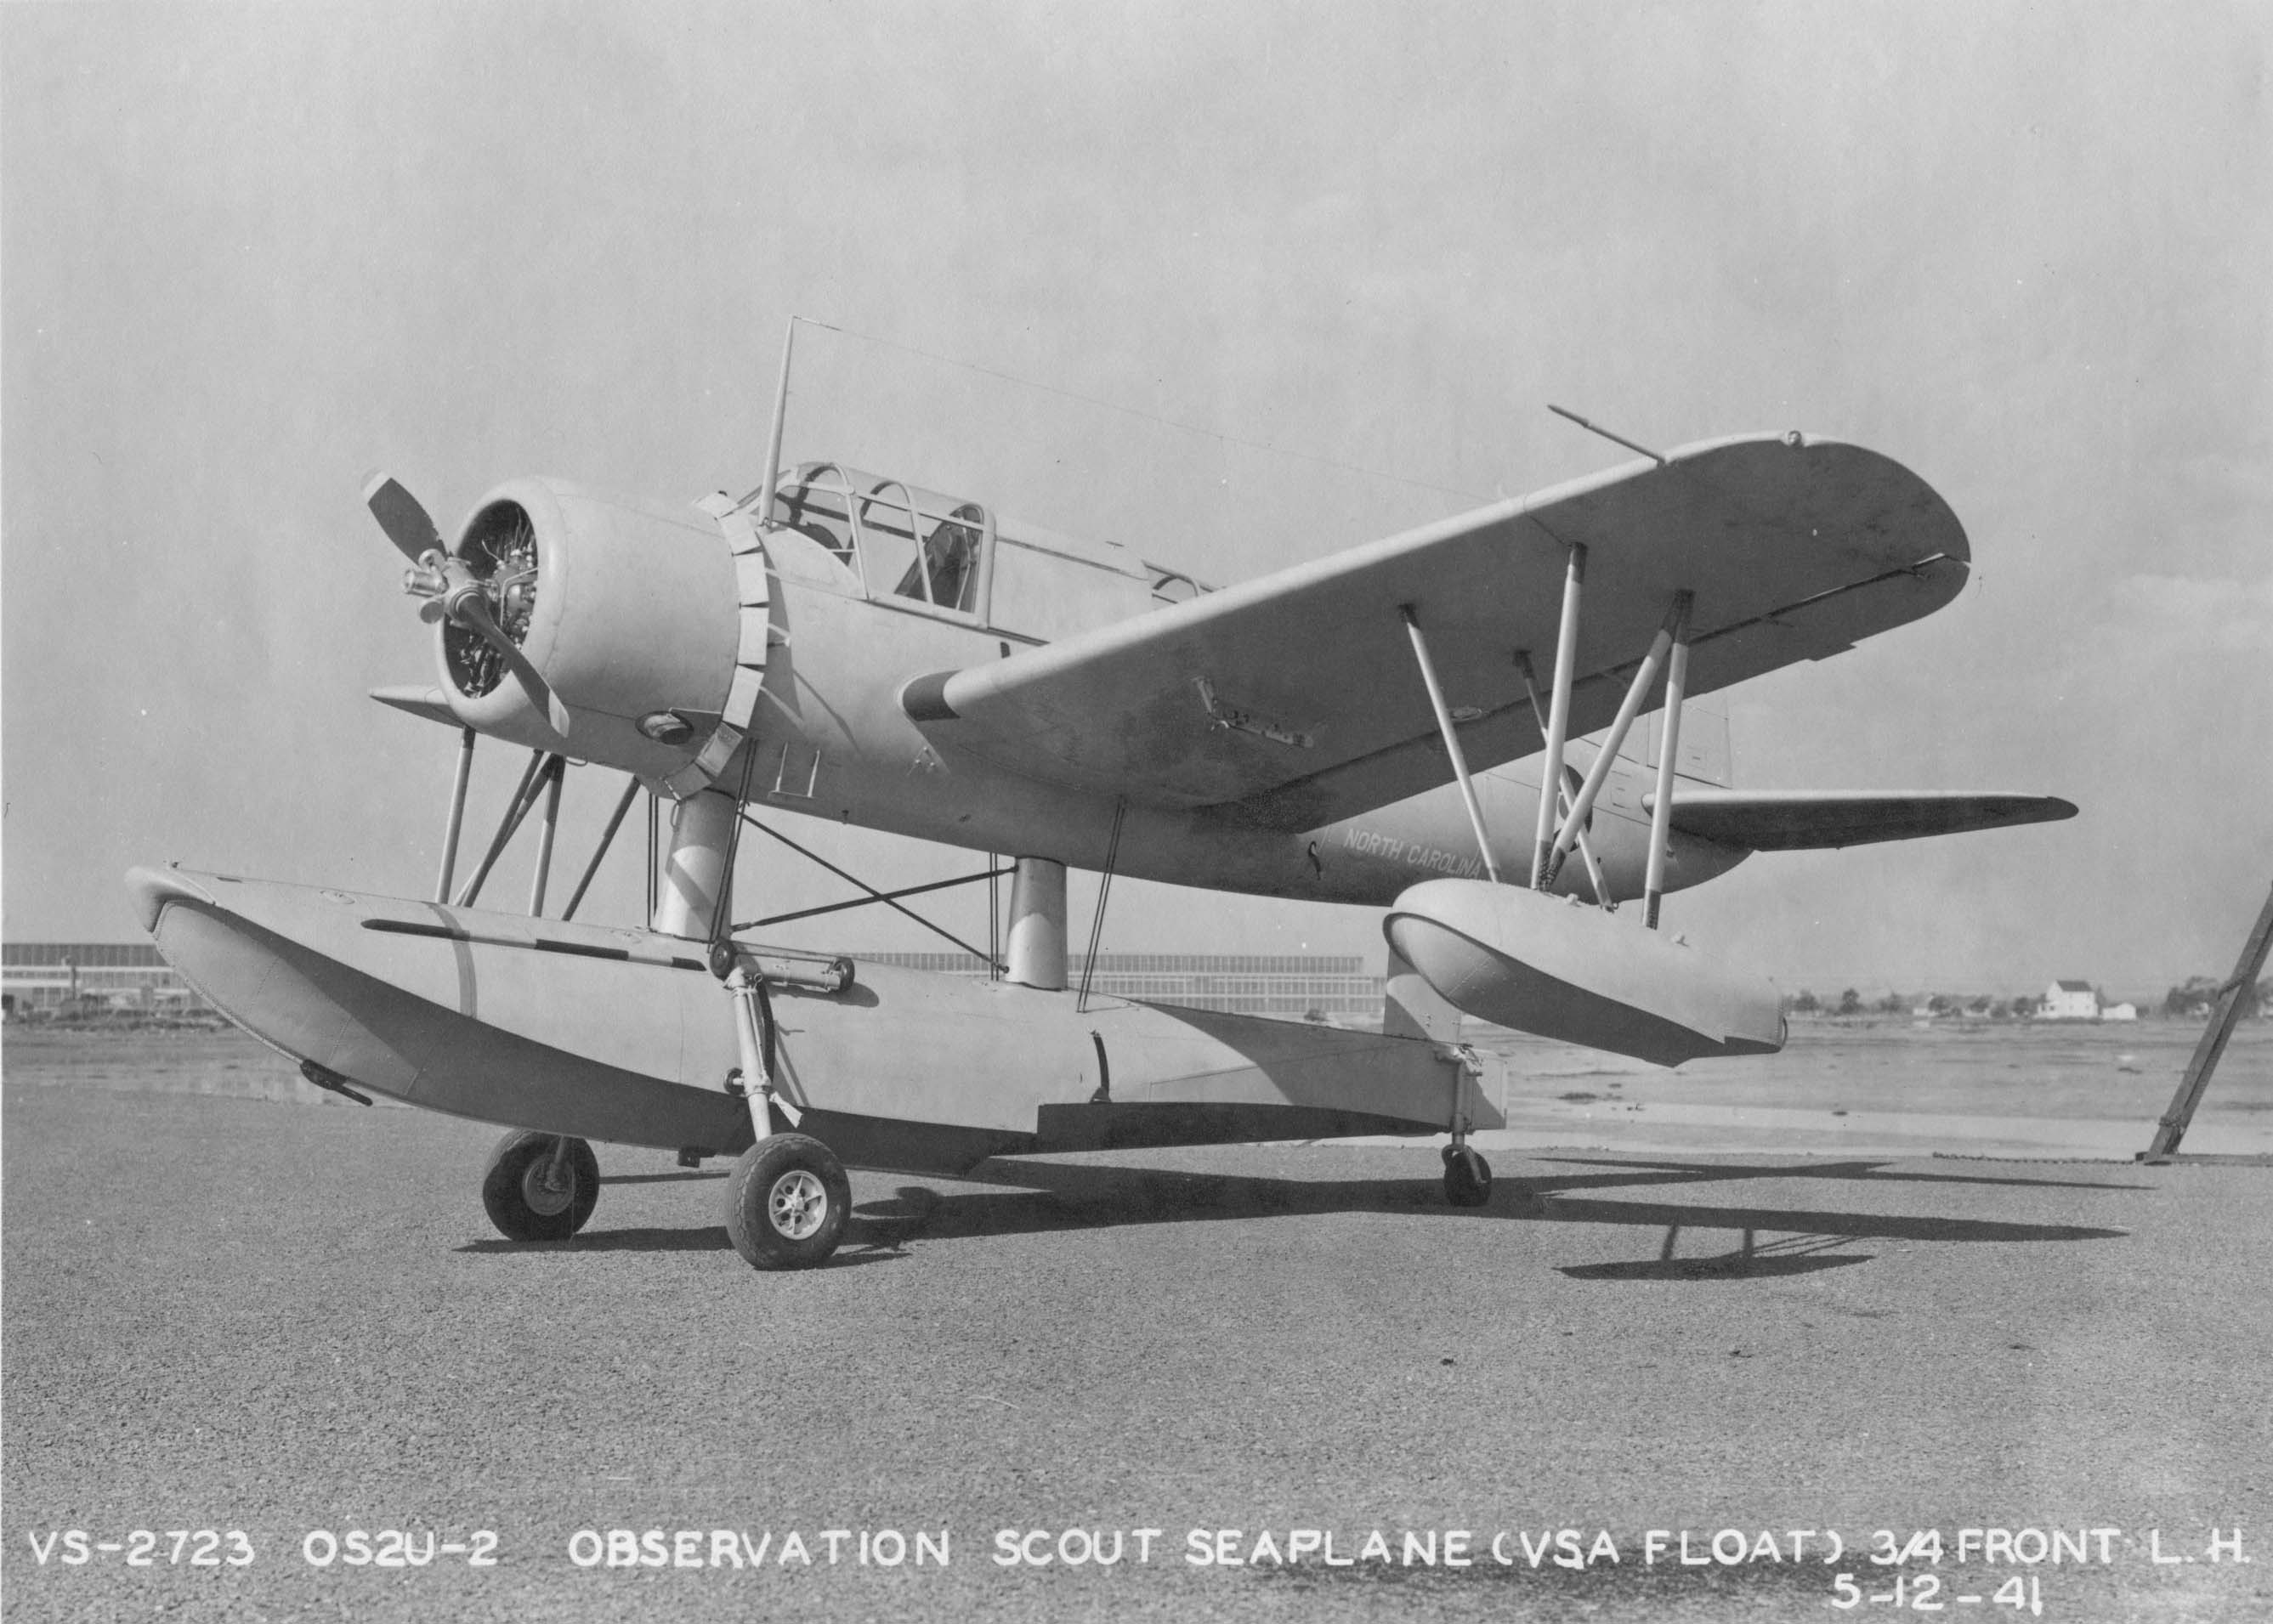 OS2U-2 - 12 May 1941 - 38-AC-Box 46-VS-2723.jpg  by modeldad